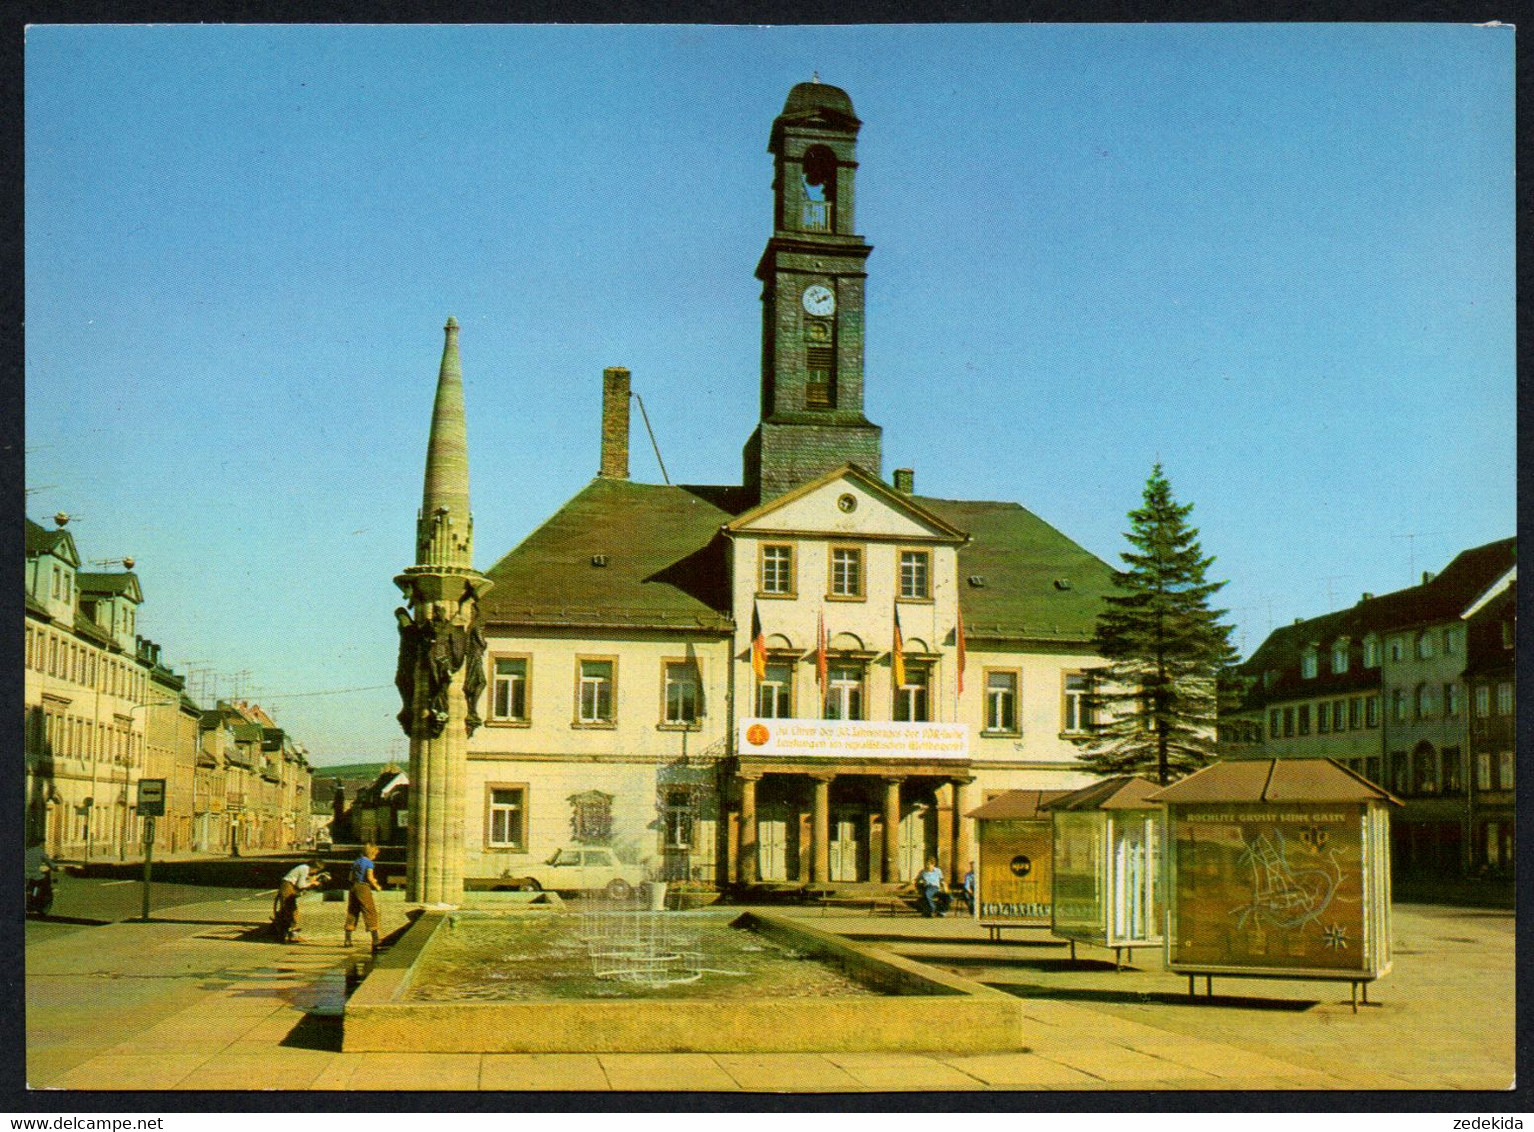 E8197 - TOP Rochlitz Rathaus - Bild Und Heimat Reichenbach - Rochlitz